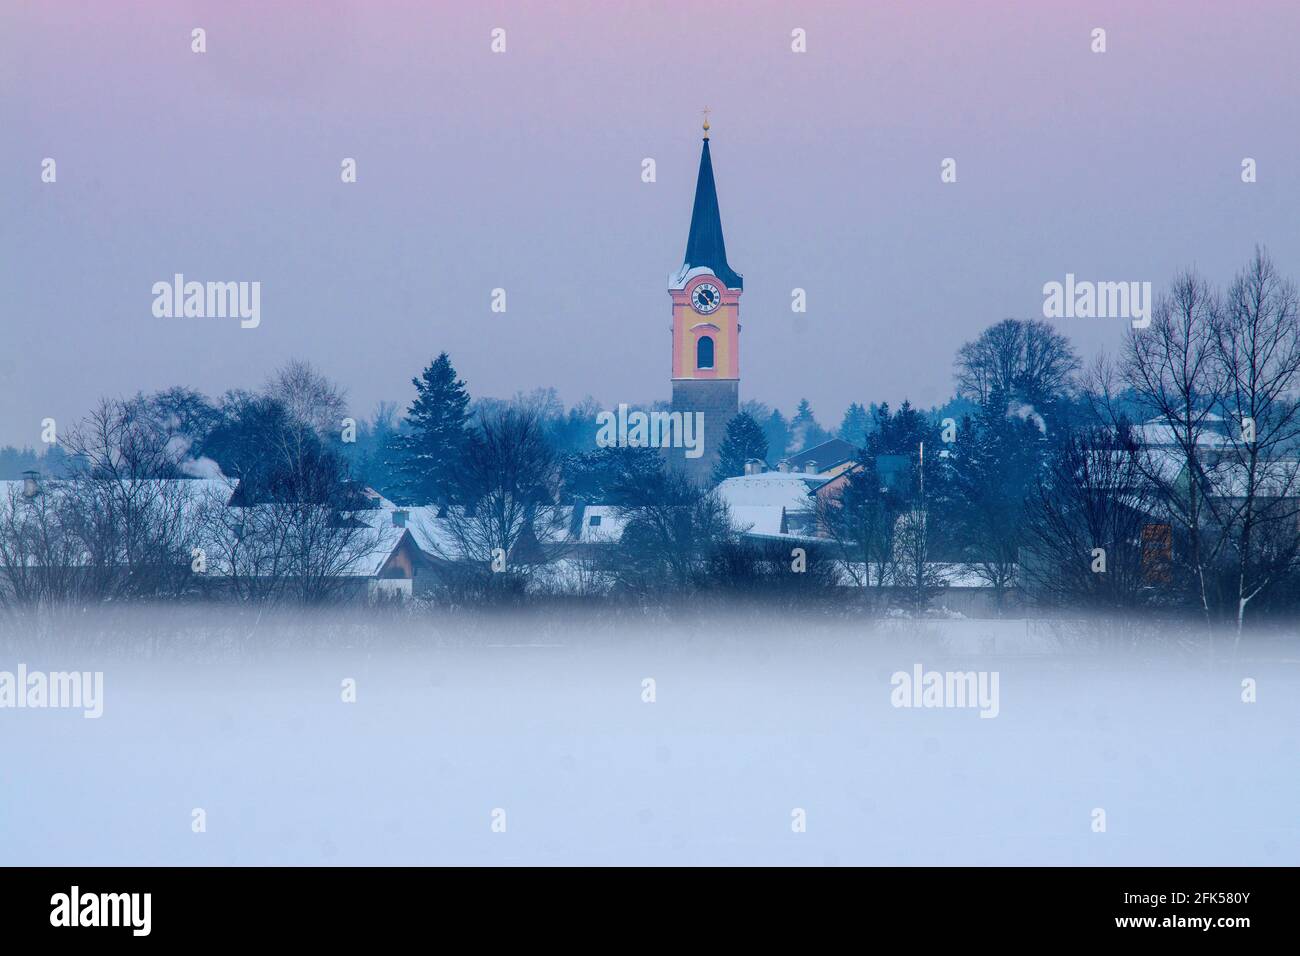 Teisendorf im herrlich tiefverschneiten Winter Stock Photo